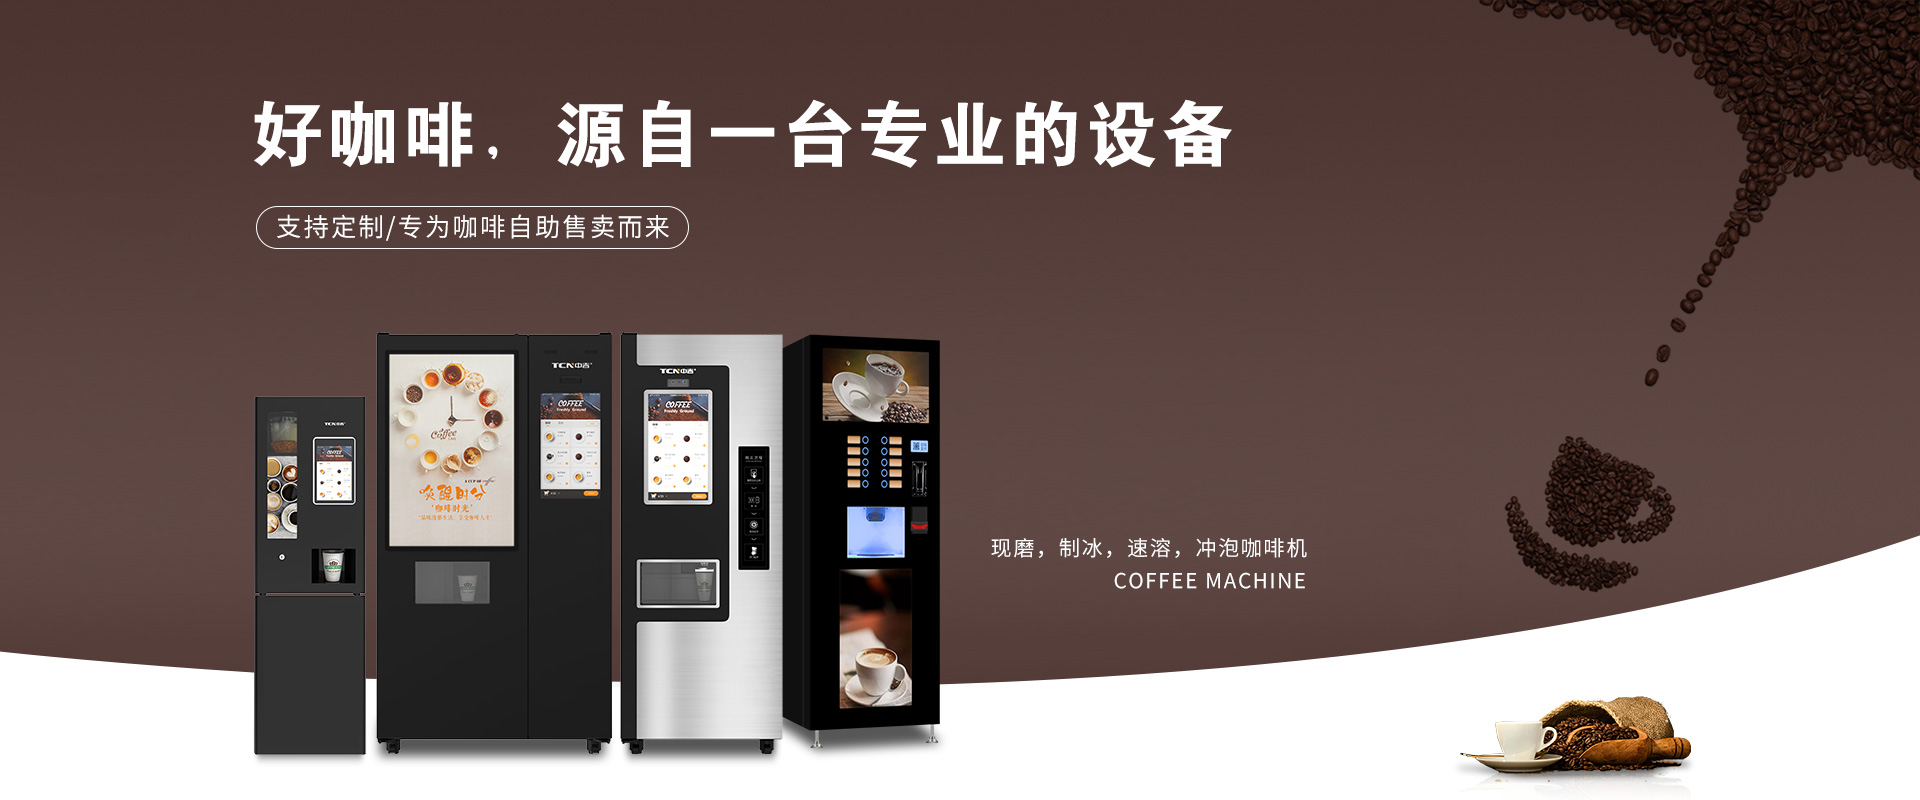 千亿市场，中华购彩网welcome现磨制冰咖啡机，致富正其时~